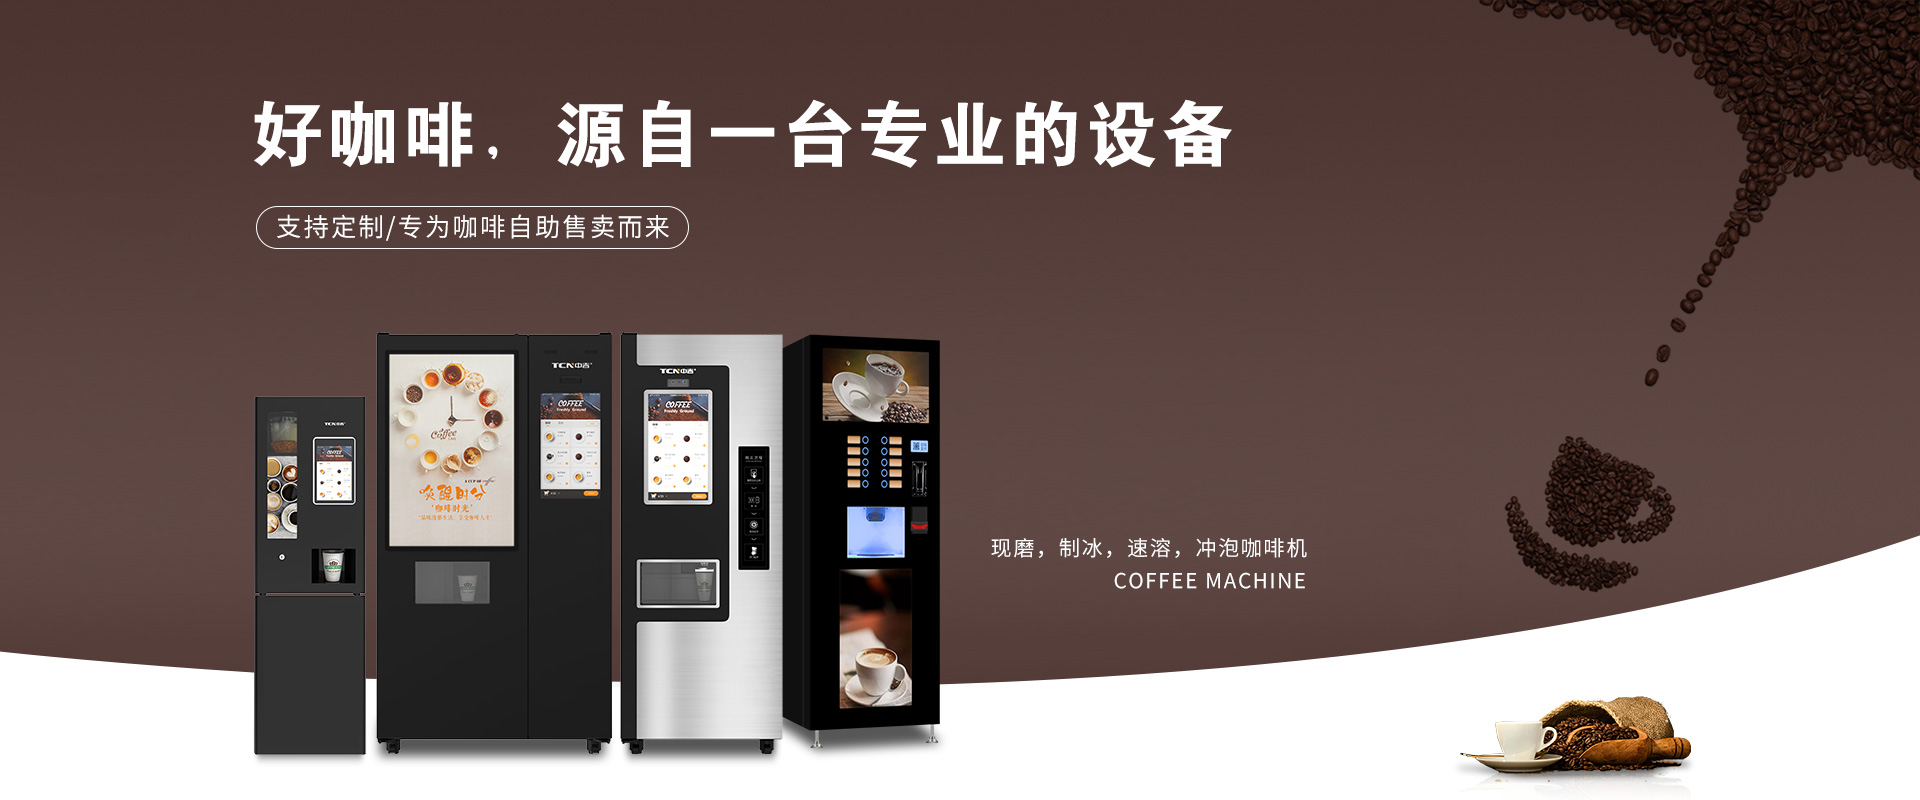 千亿市场，中华购彩网welcome现磨制冰咖啡机，致富正其时~